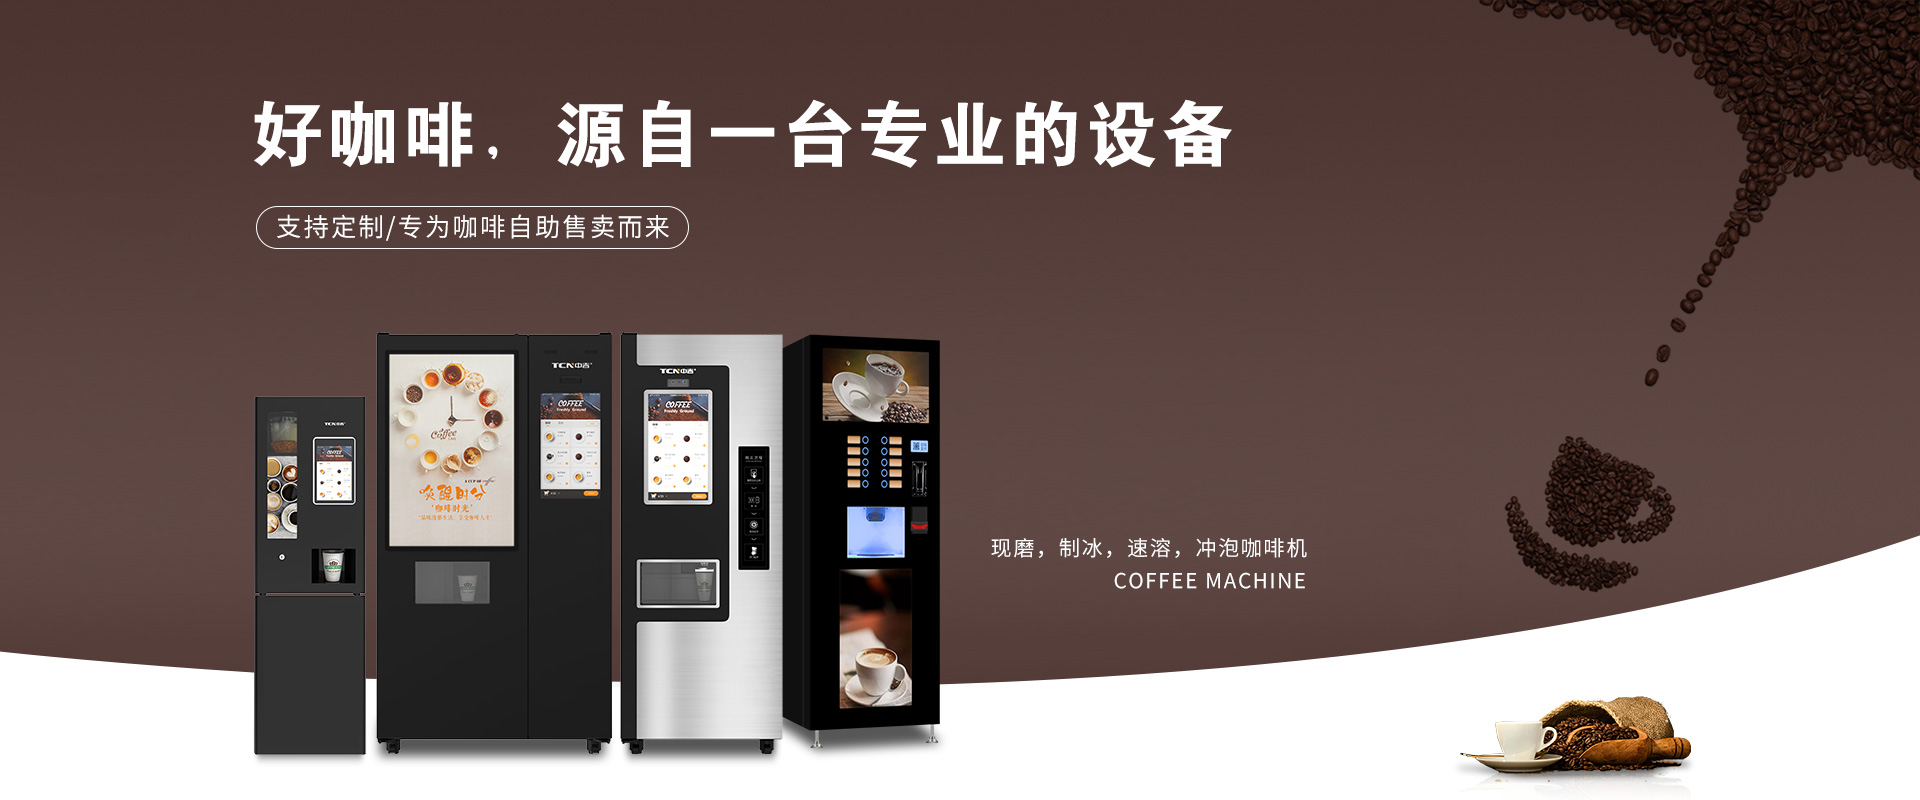 千亿市场，中华购彩网welcome现磨制冰咖啡机，致富正其时~